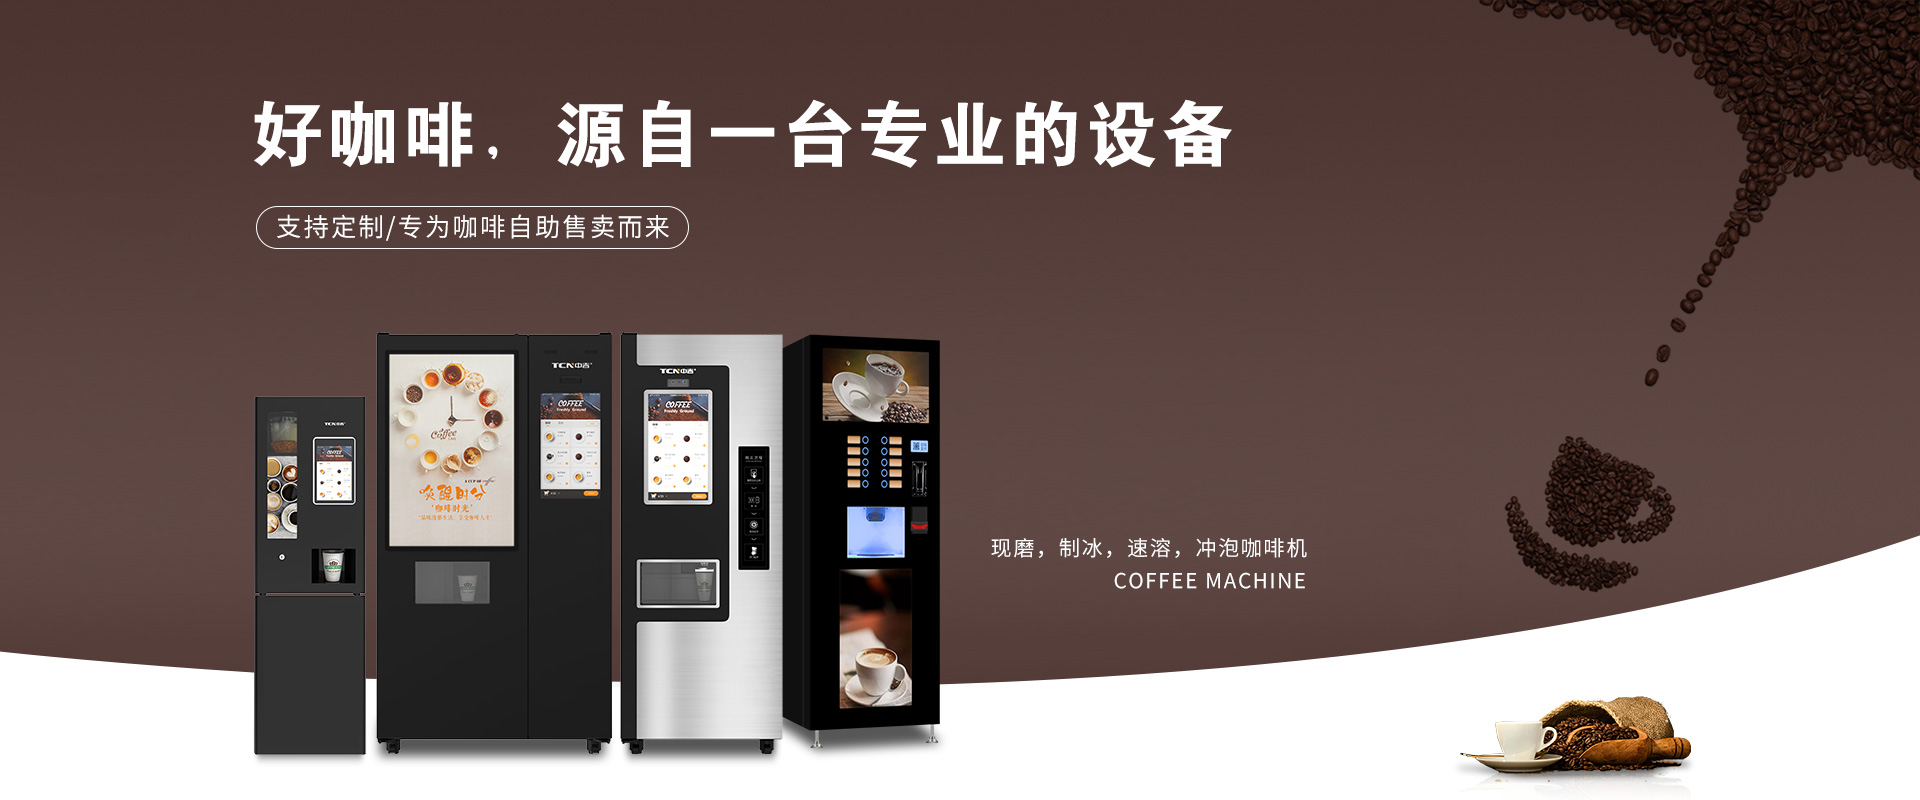 千亿市场，中华购彩网welcome现磨制冰咖啡机，致富正其时~